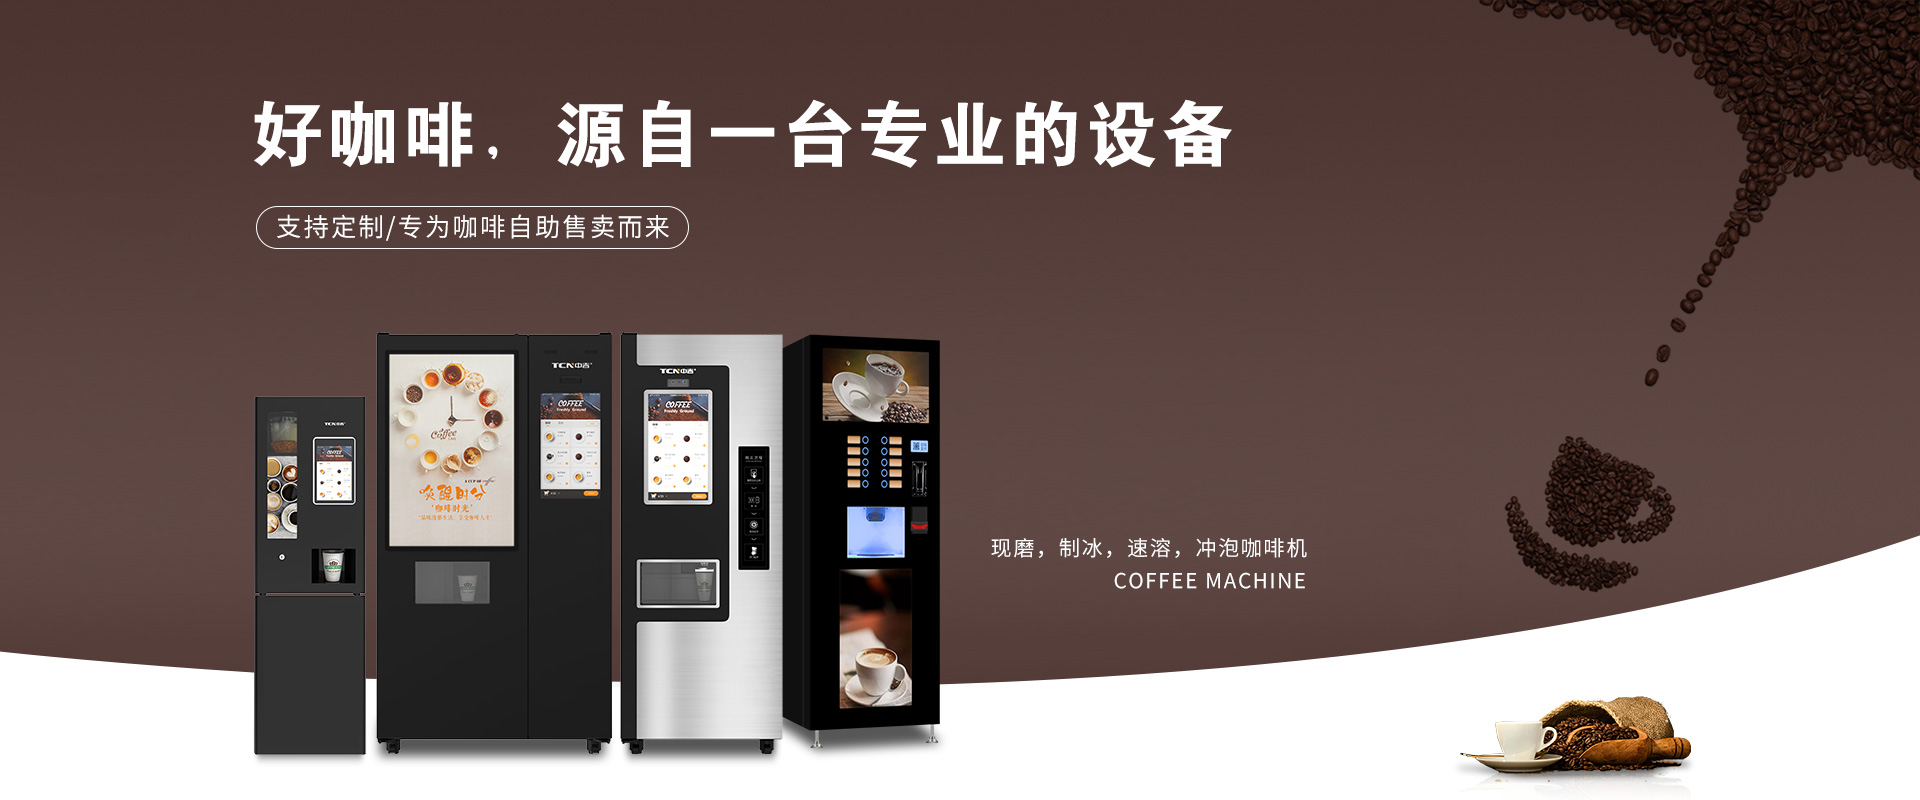 千亿市场，中华购彩网welcome现磨制冰咖啡机，致富正其时~